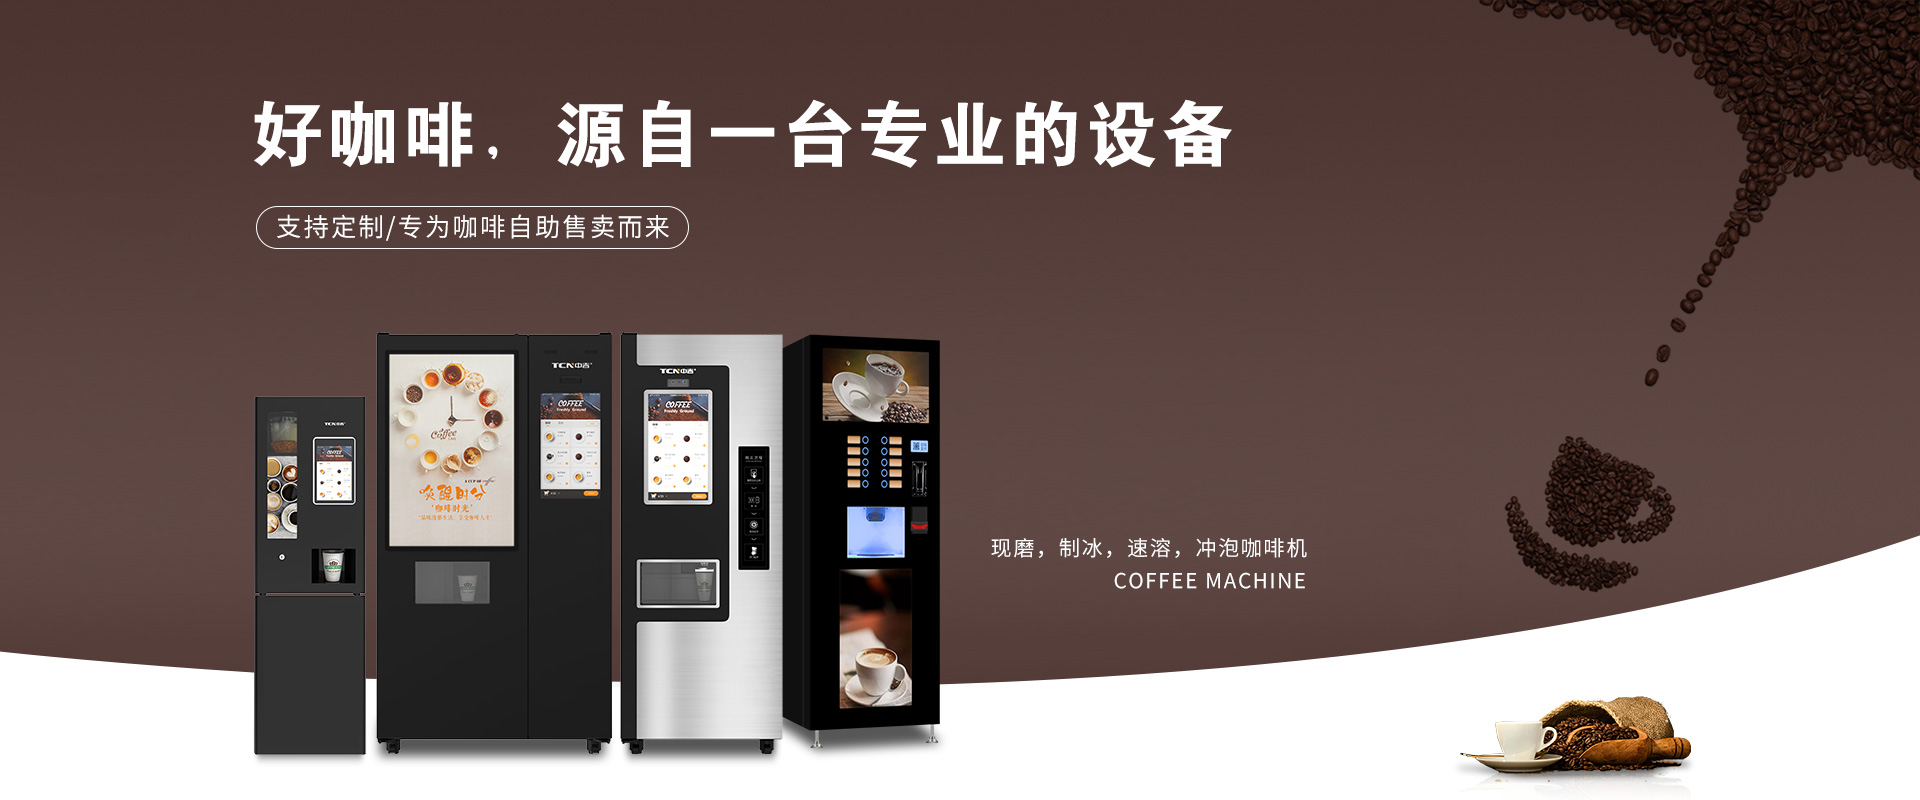 千亿市场，中华购彩网welcome现磨制冰咖啡机，致富正其时~